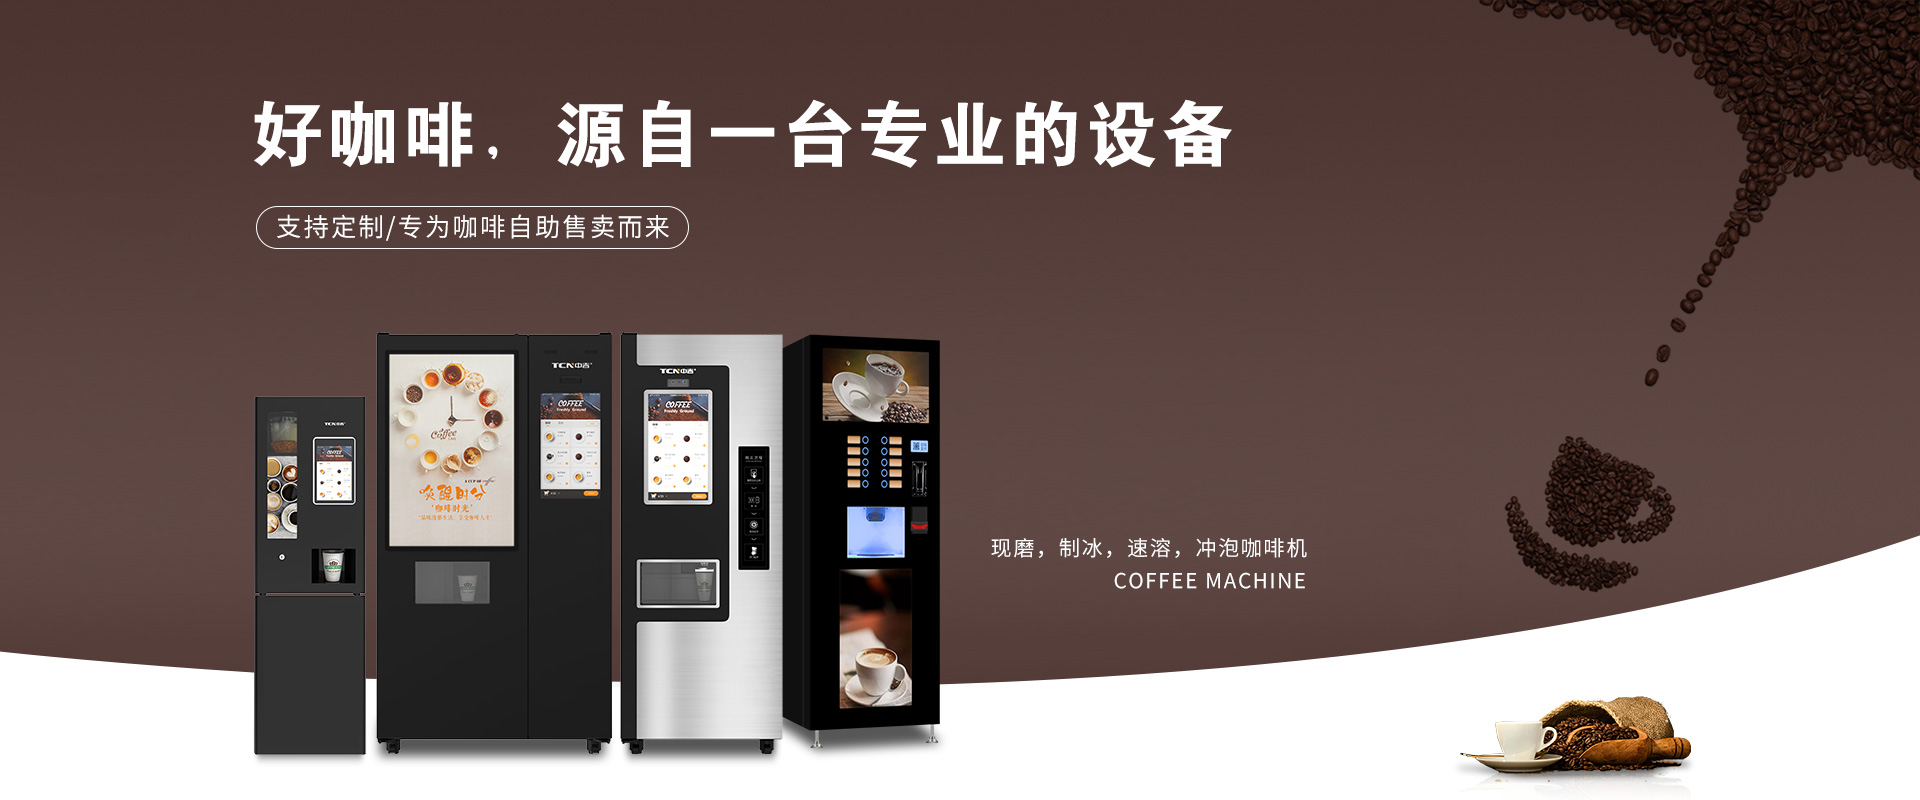 千亿市场，中华购彩网welcome现磨制冰咖啡机，致富正其时~